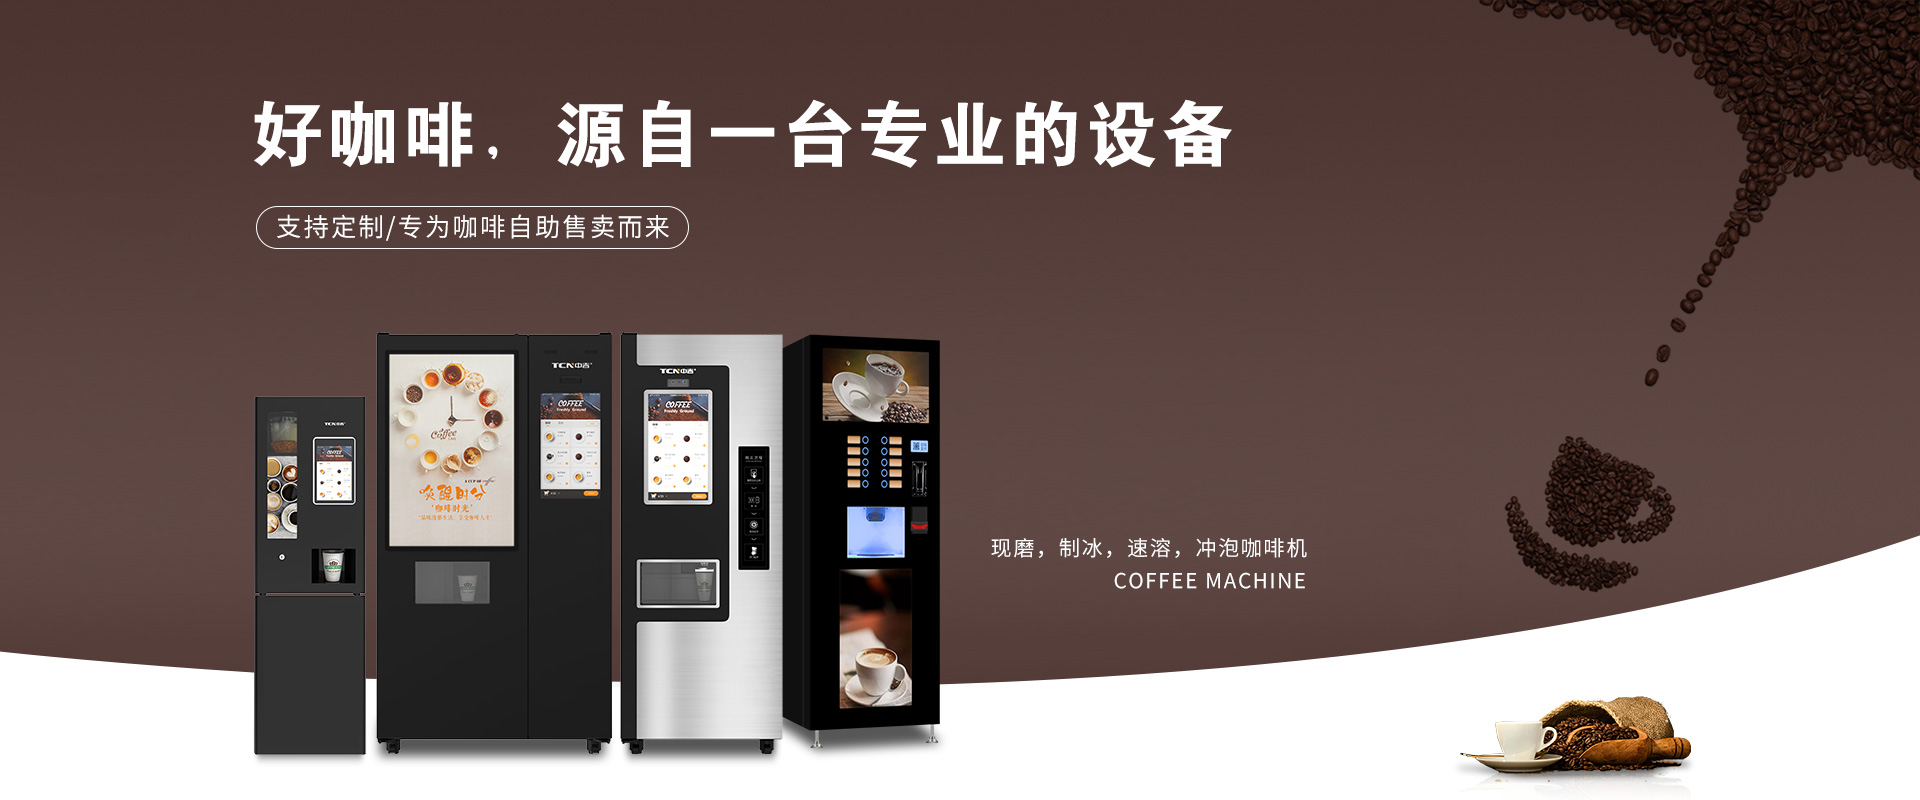 千亿市场，中华购彩网welcome现磨制冰咖啡机，致富正其时~